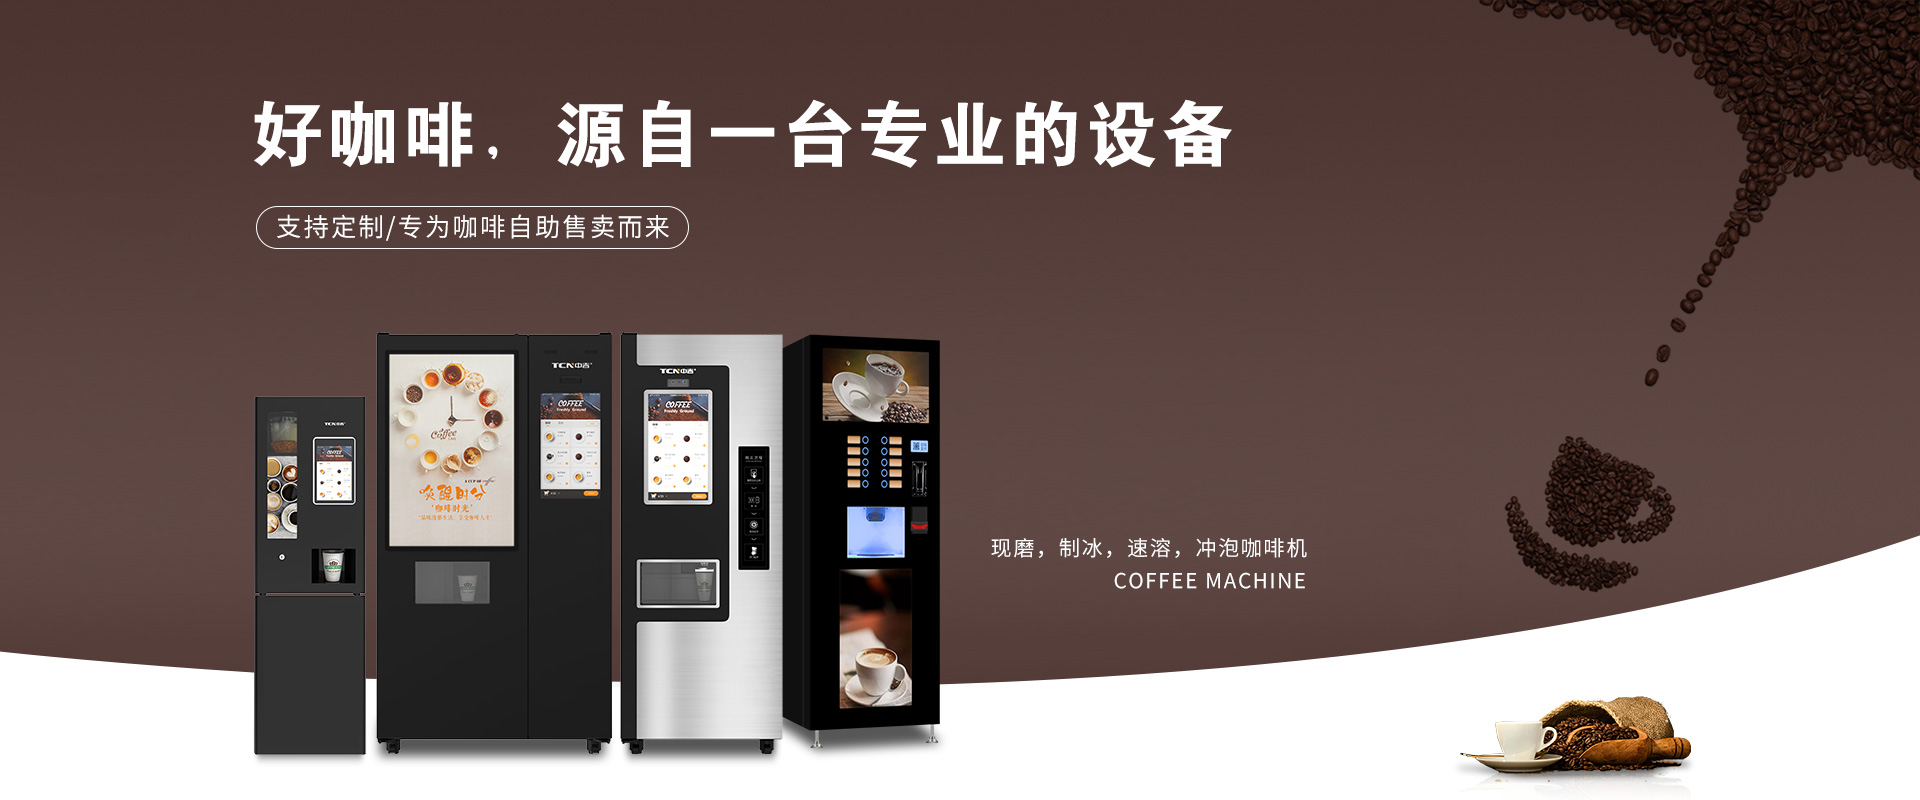 千亿市场，中华购彩网welcome现磨制冰咖啡机，致富正其时~